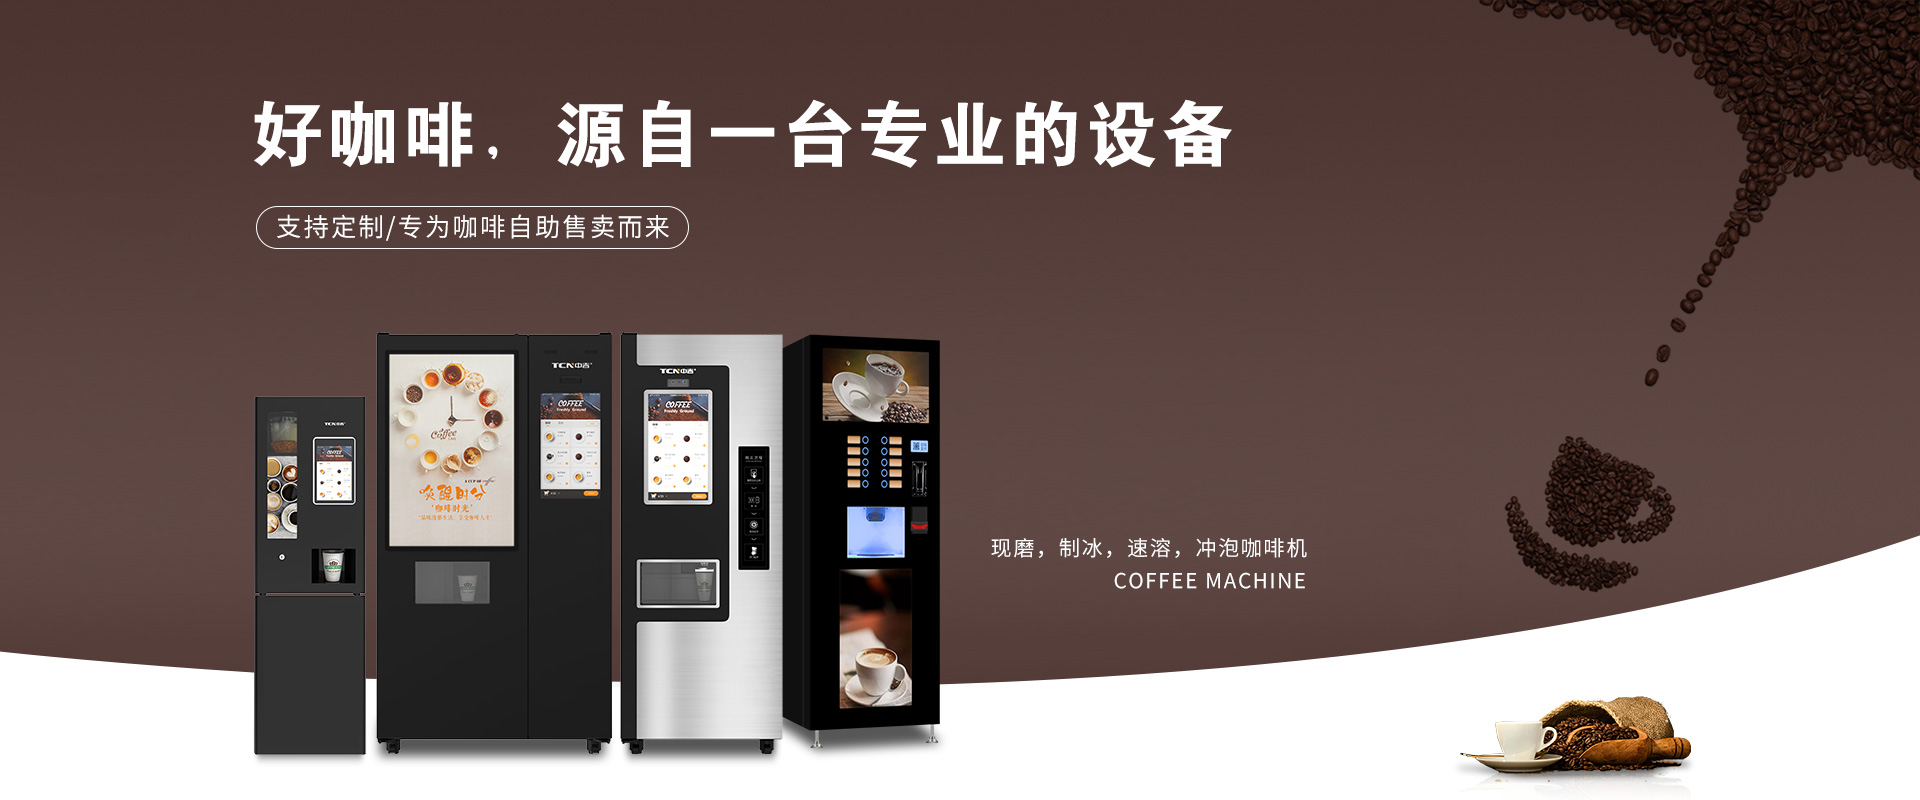 千亿市场，中华购彩网welcome现磨制冰咖啡机，致富正其时~